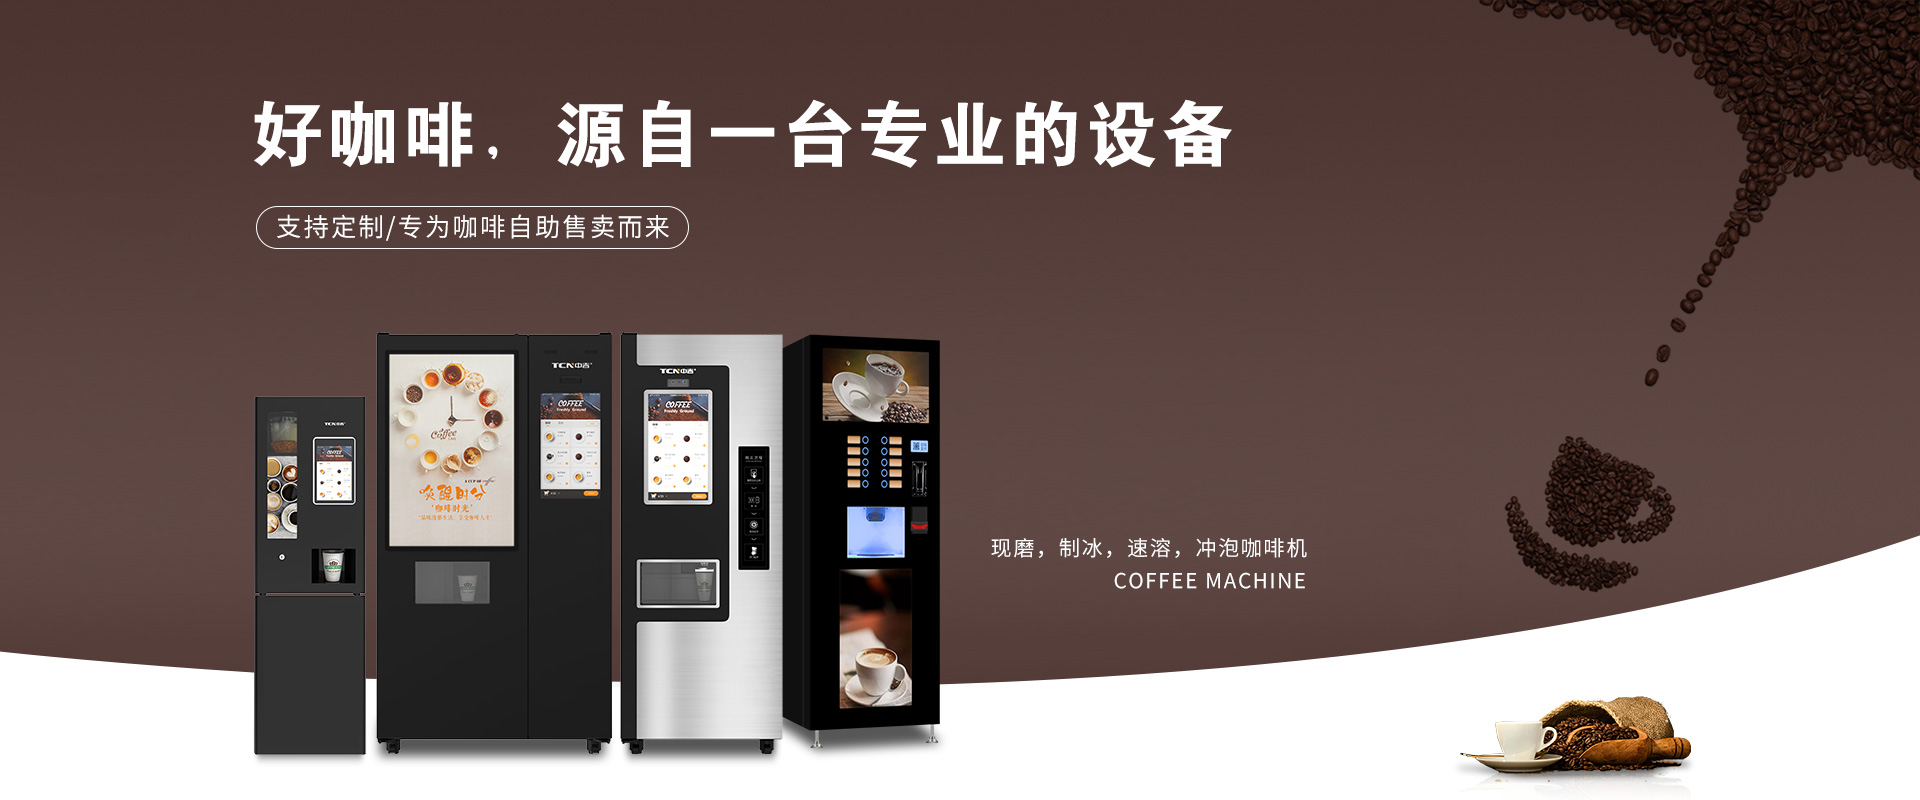 千亿市场，中华购彩网welcome现磨制冰咖啡机，致富正其时~